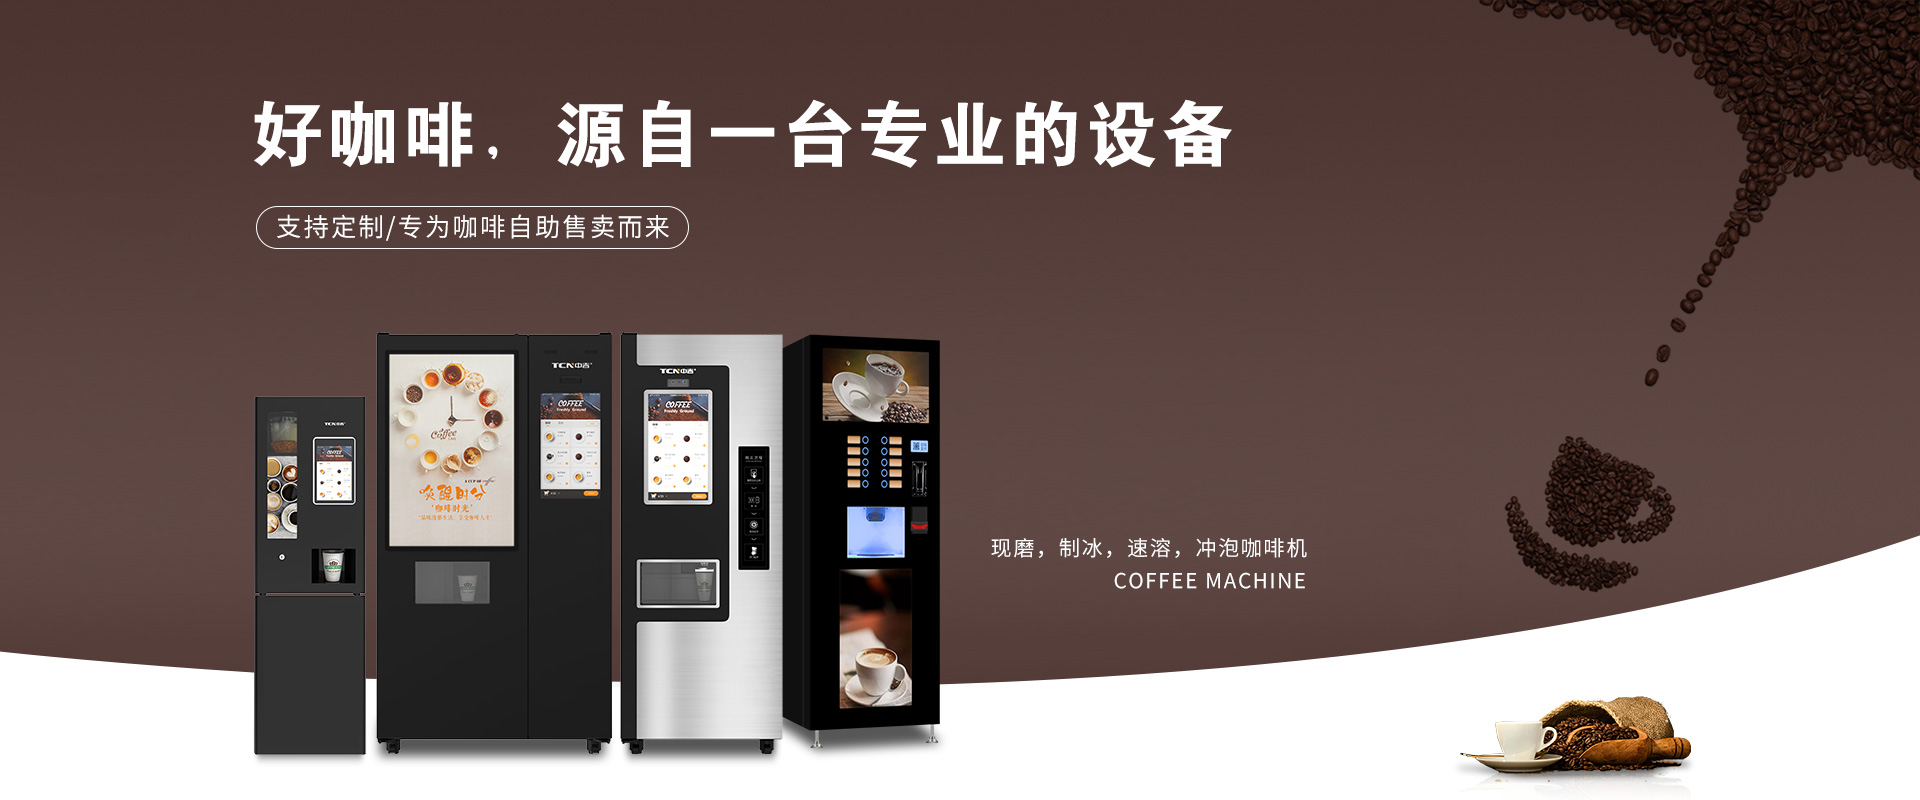 千亿市场，中华购彩网welcome现磨制冰咖啡机，致富正其时~